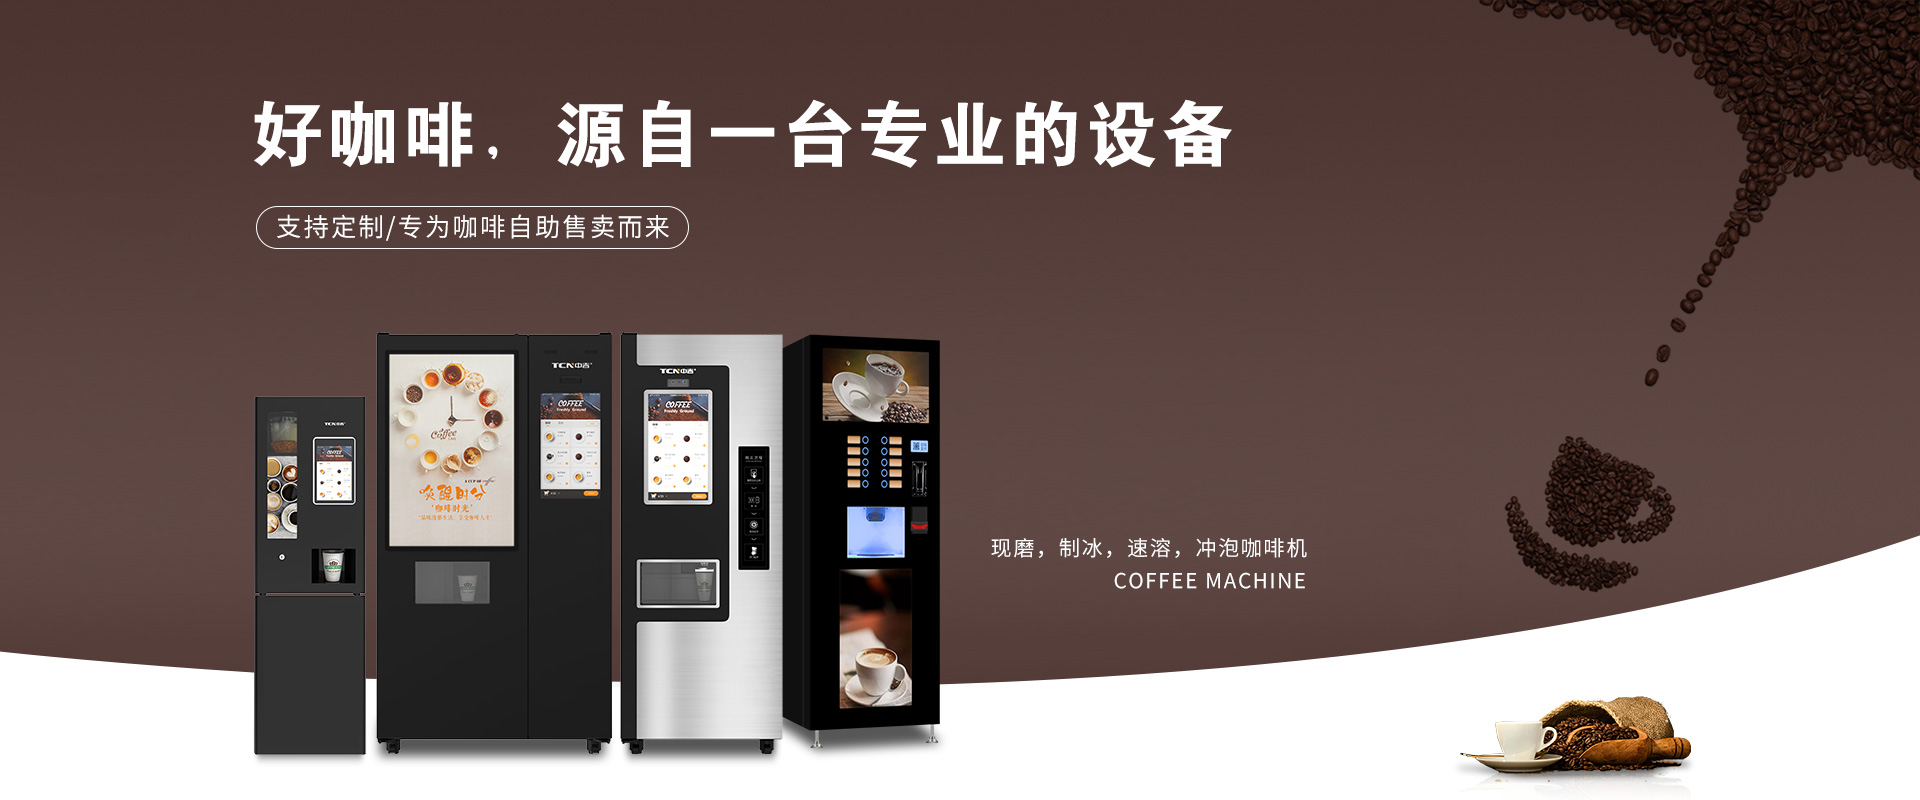 千亿市场，中华购彩网welcome现磨制冰咖啡机，致富正其时~